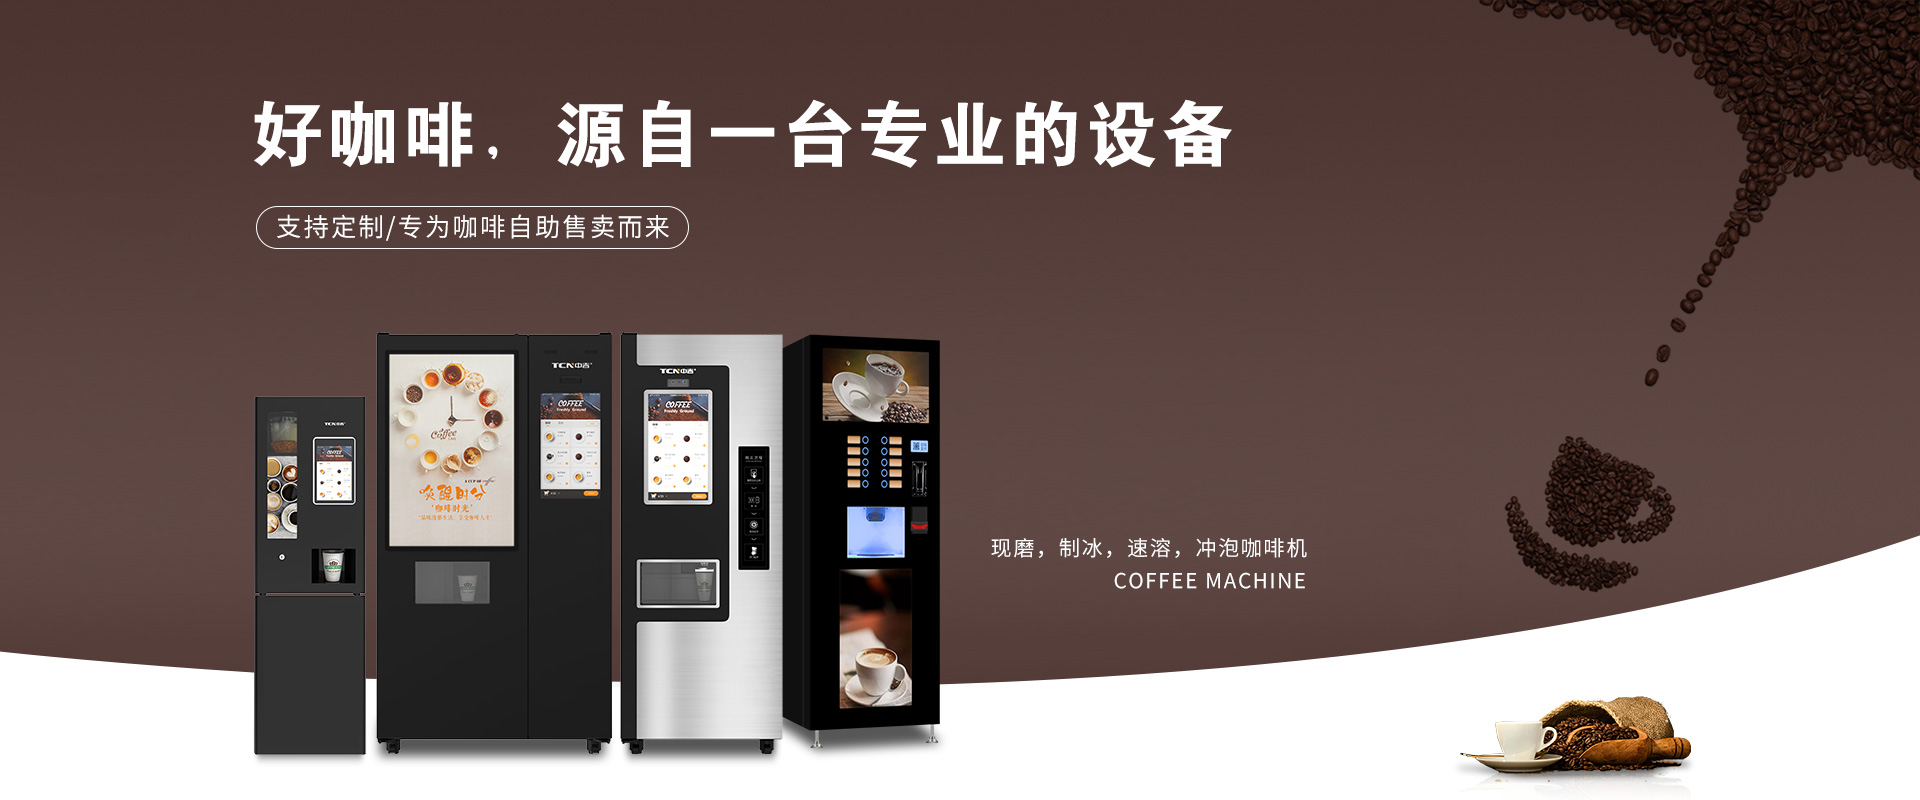 千亿市场，中华购彩网welcome现磨制冰咖啡机，致富正其时~